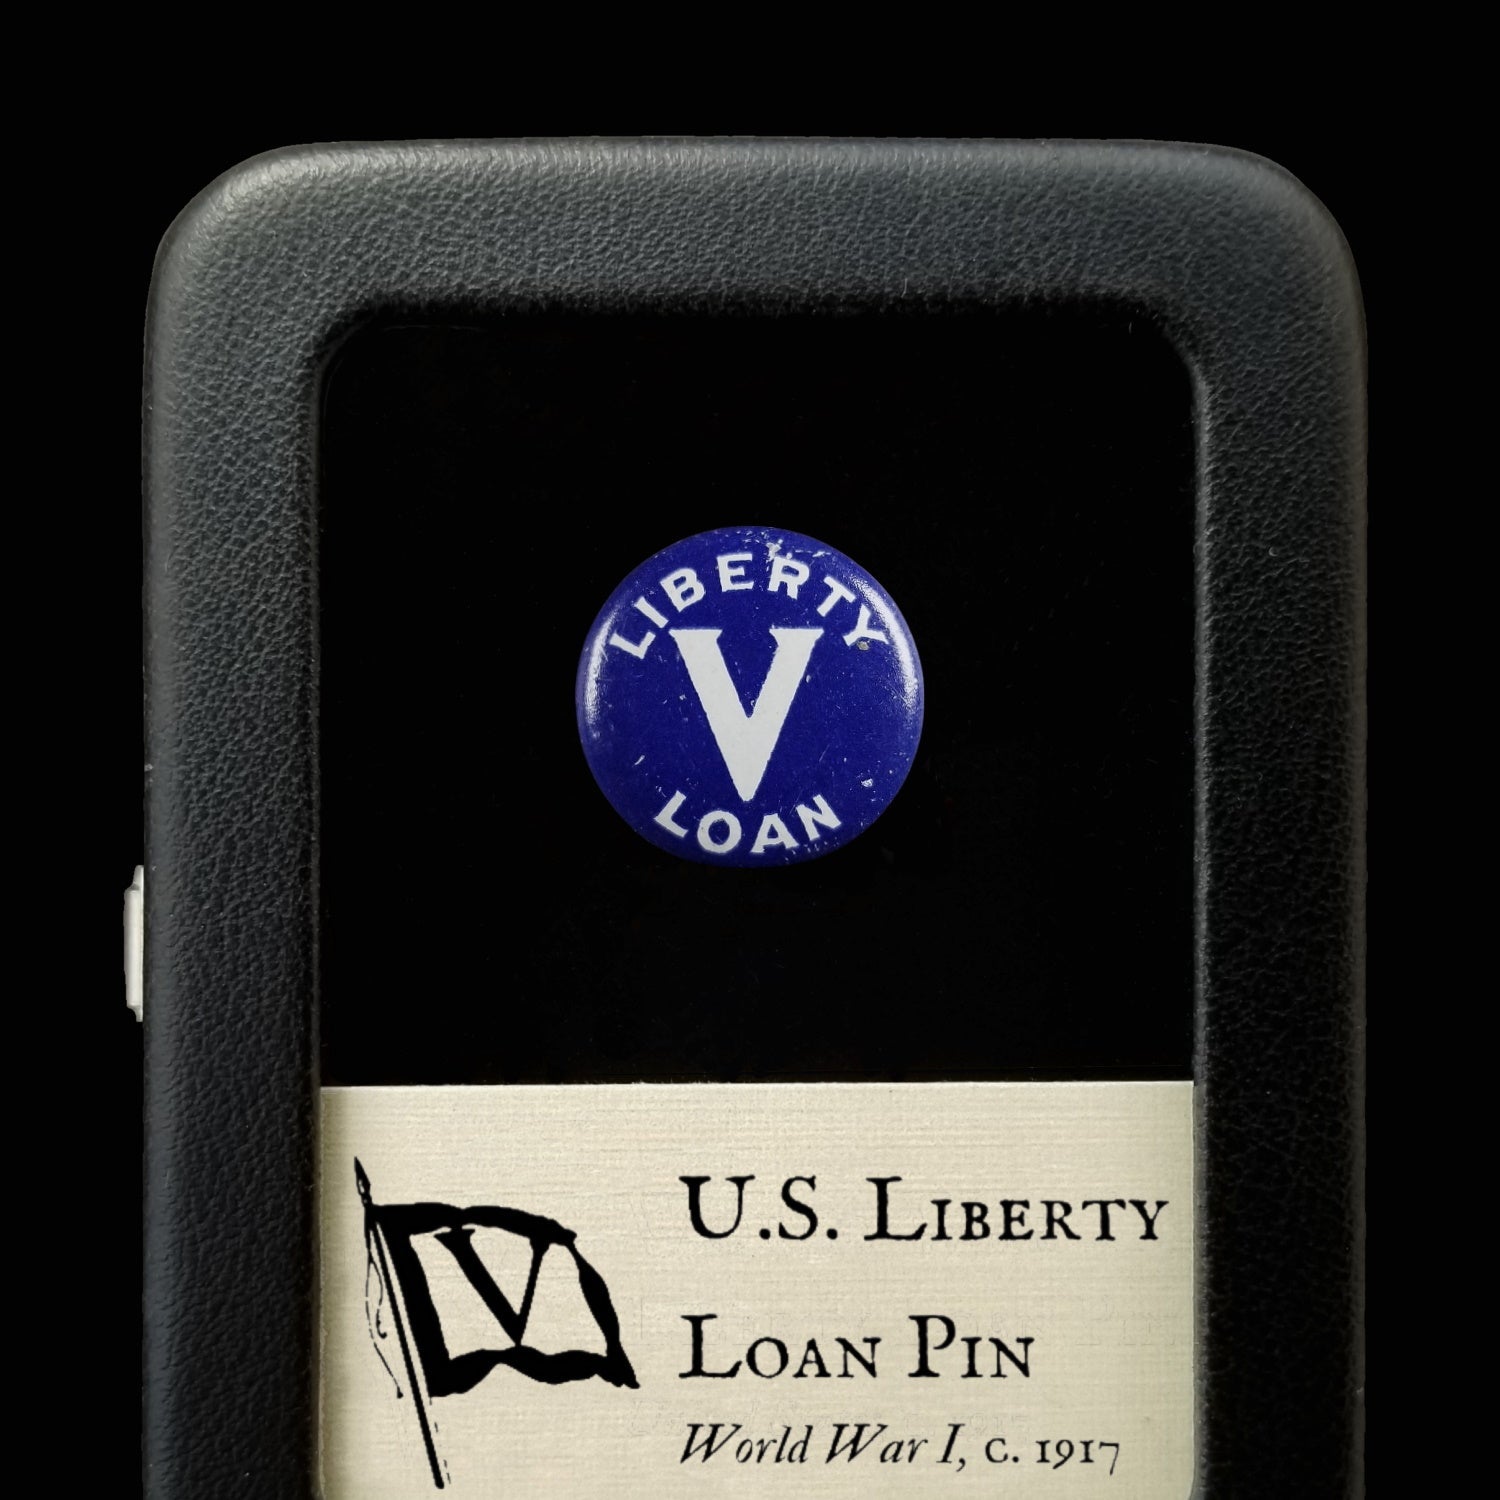 WWI Liberty Loan Pin - 1917 - United States